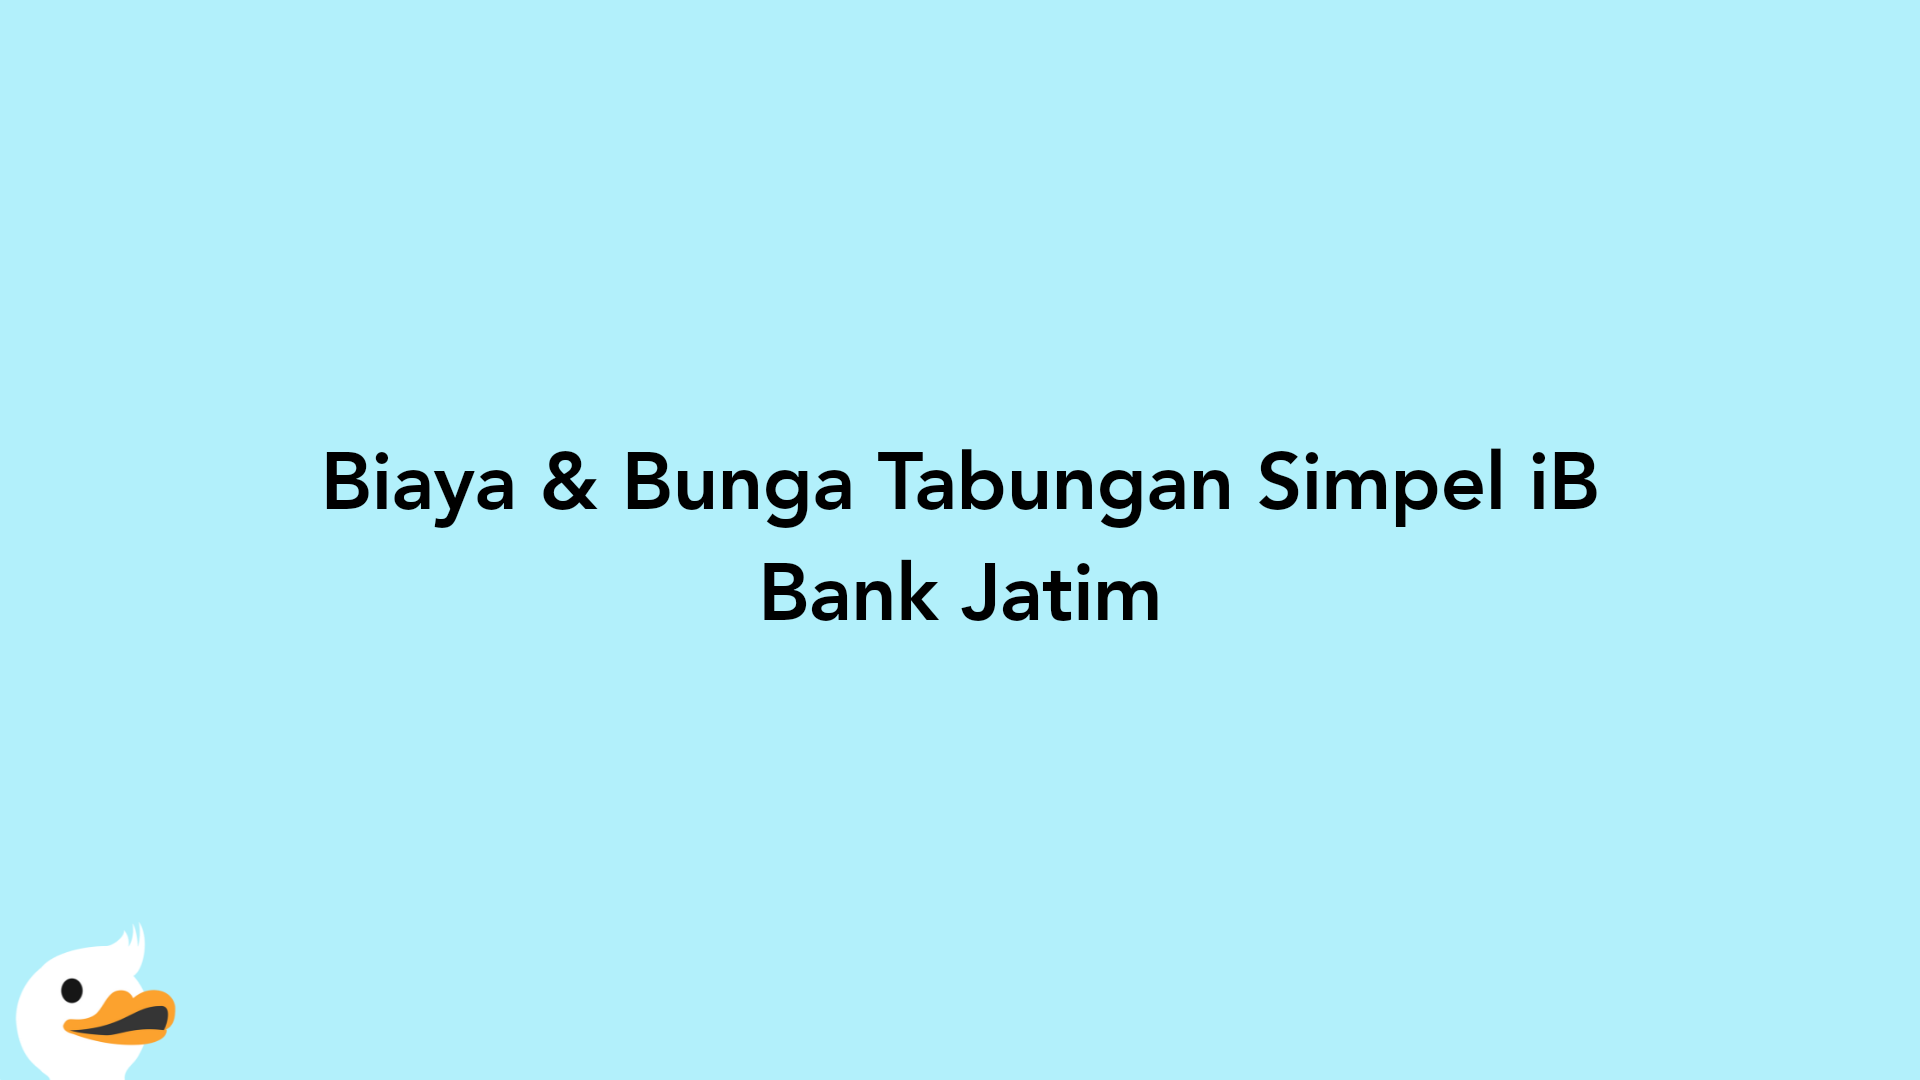 Biaya & Bunga Tabungan Simpel iB Bank Jatim